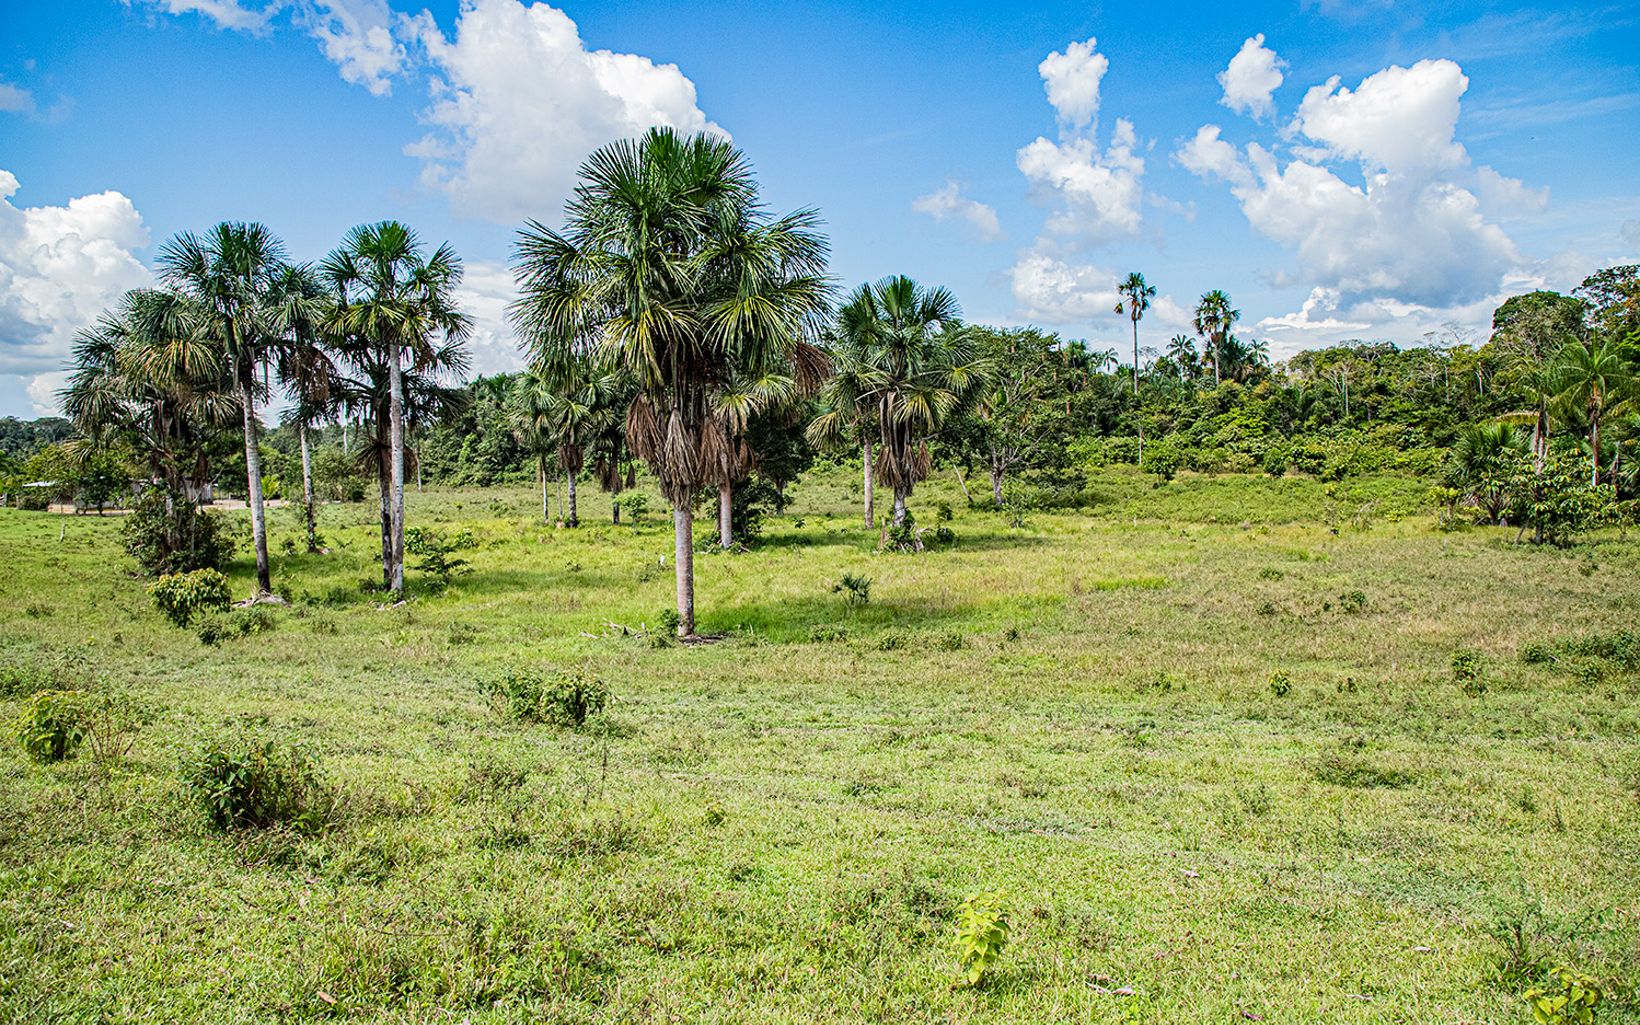 El territorio muestra escenas de deforestación cada vez más frecuentes, que contrastan con la exuberancia natural de la selva.